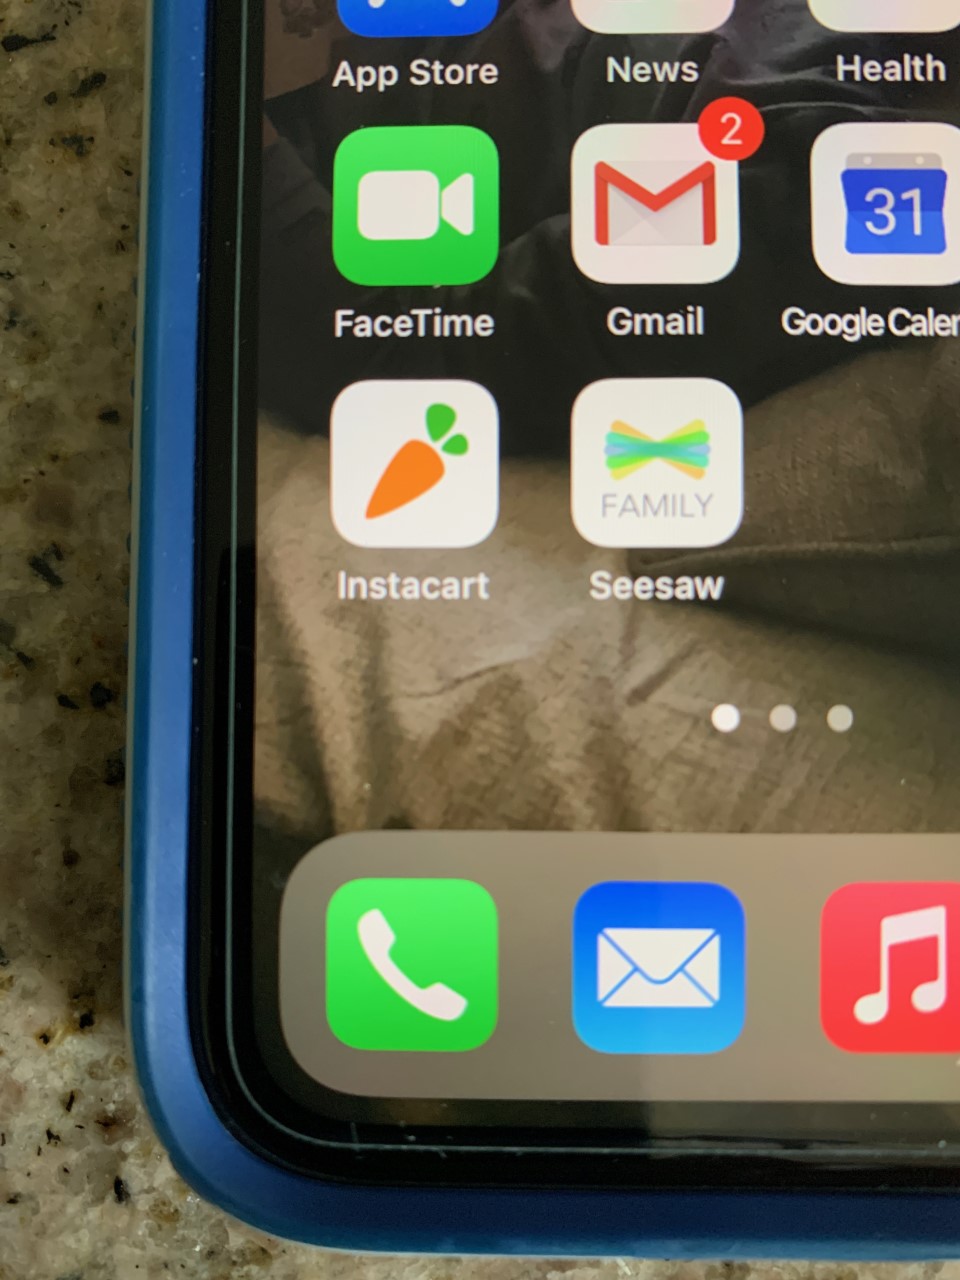 Instacart app on an iPhone